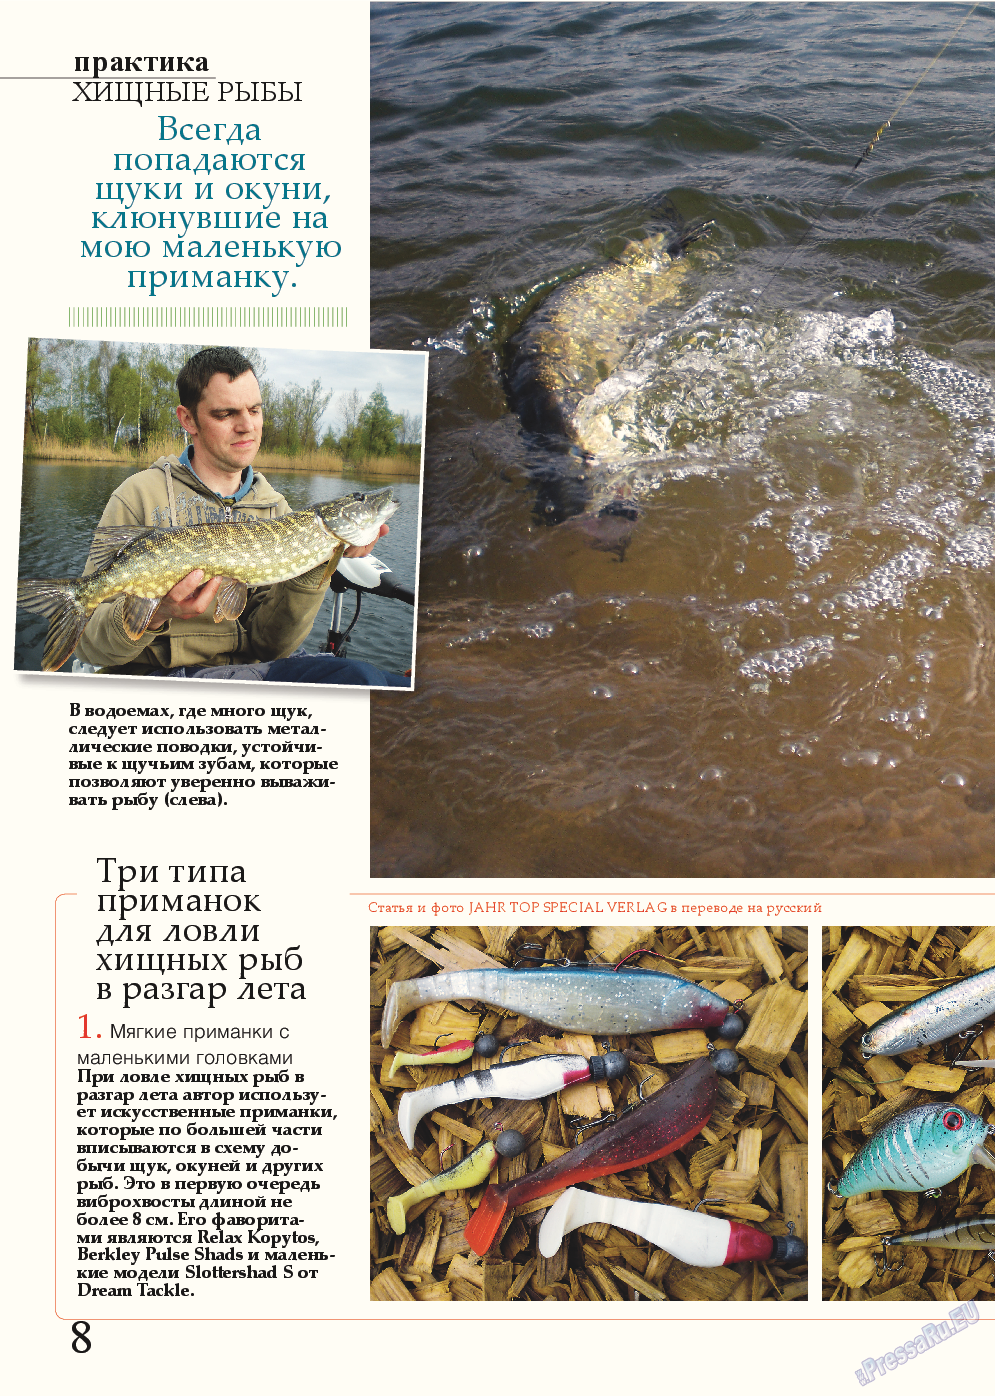 Рыбалка Plus, журнал. 2014 №8 стр.8